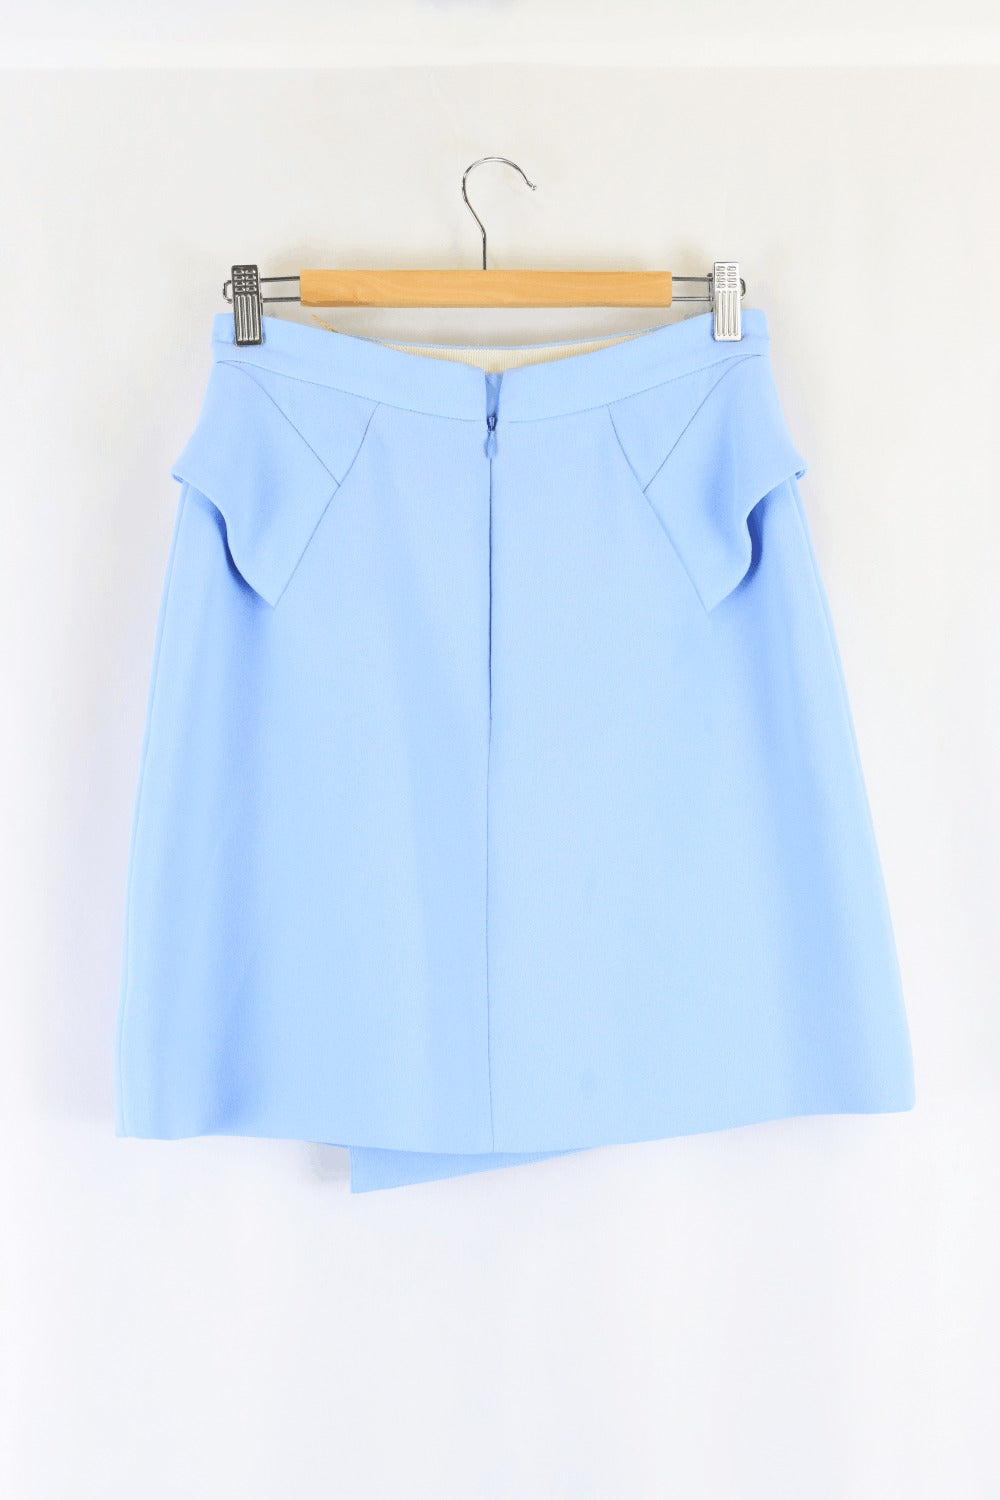 Carven Blue Skirt 38 (6)